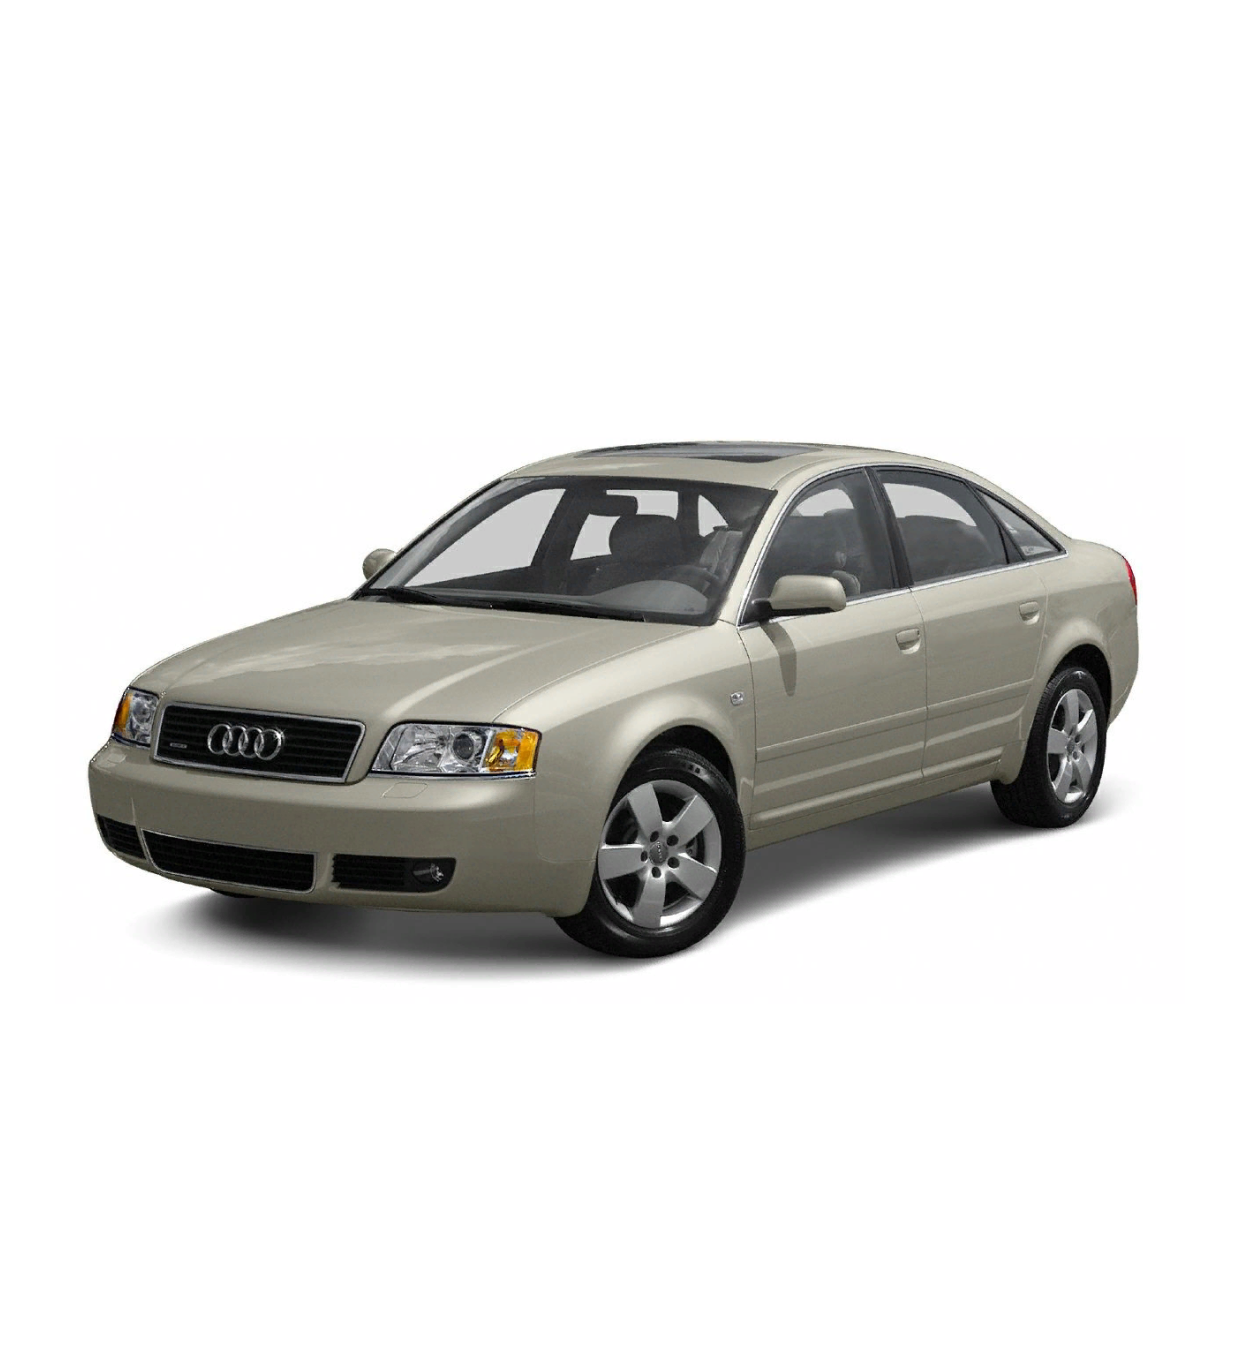 Купить кузов ауди а6. Audi a6 (с5) 1997 - 2004 (седан). Audi a6 1997. Audi a6 кузов с 5 седан 1997-2004. Ауди а6 1997.